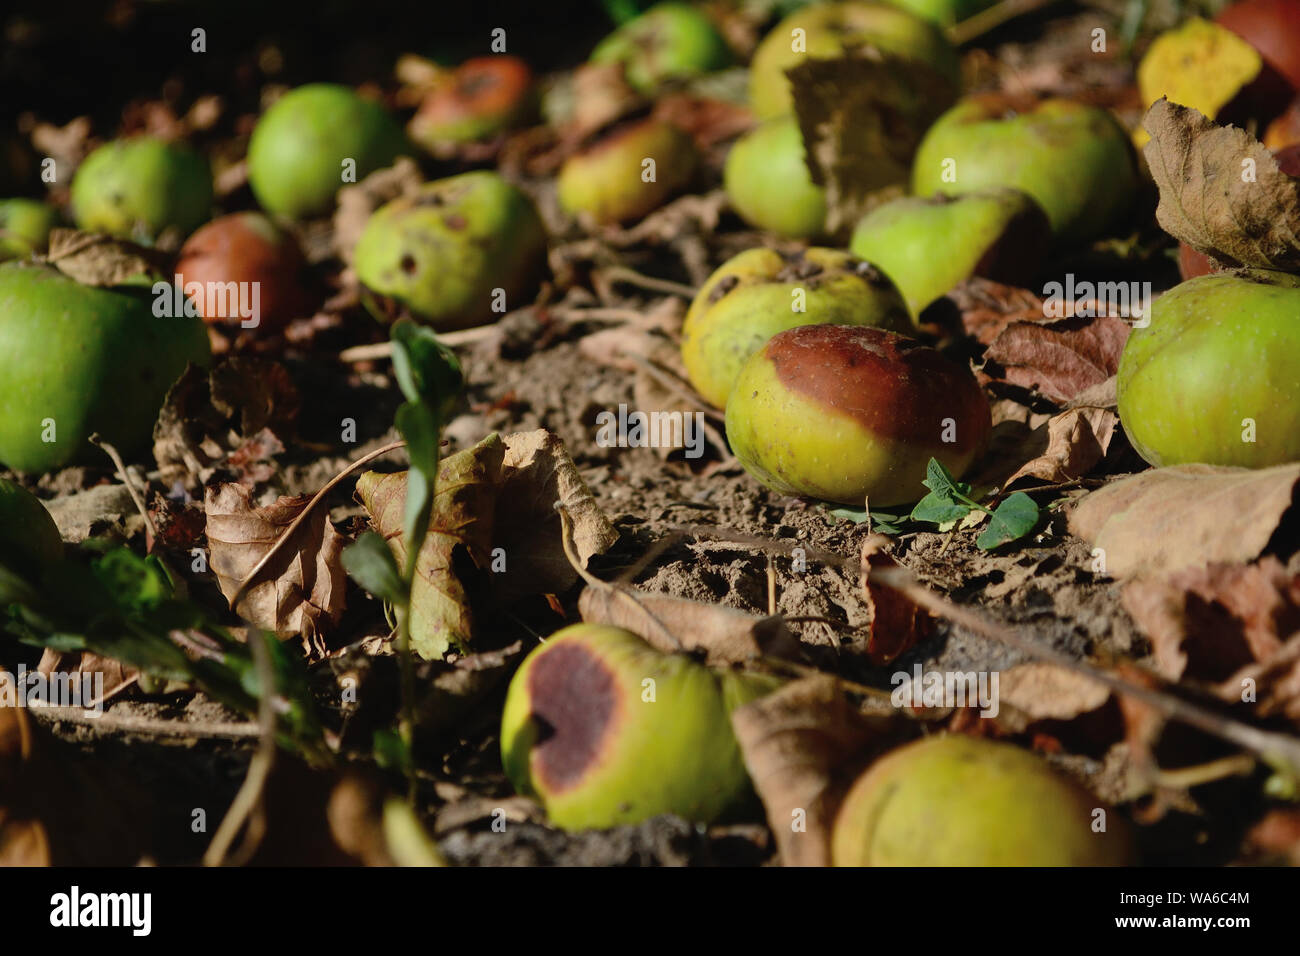 Mele Verdi sul terreno caduto dall'albero, Malus domestica Foto Stock